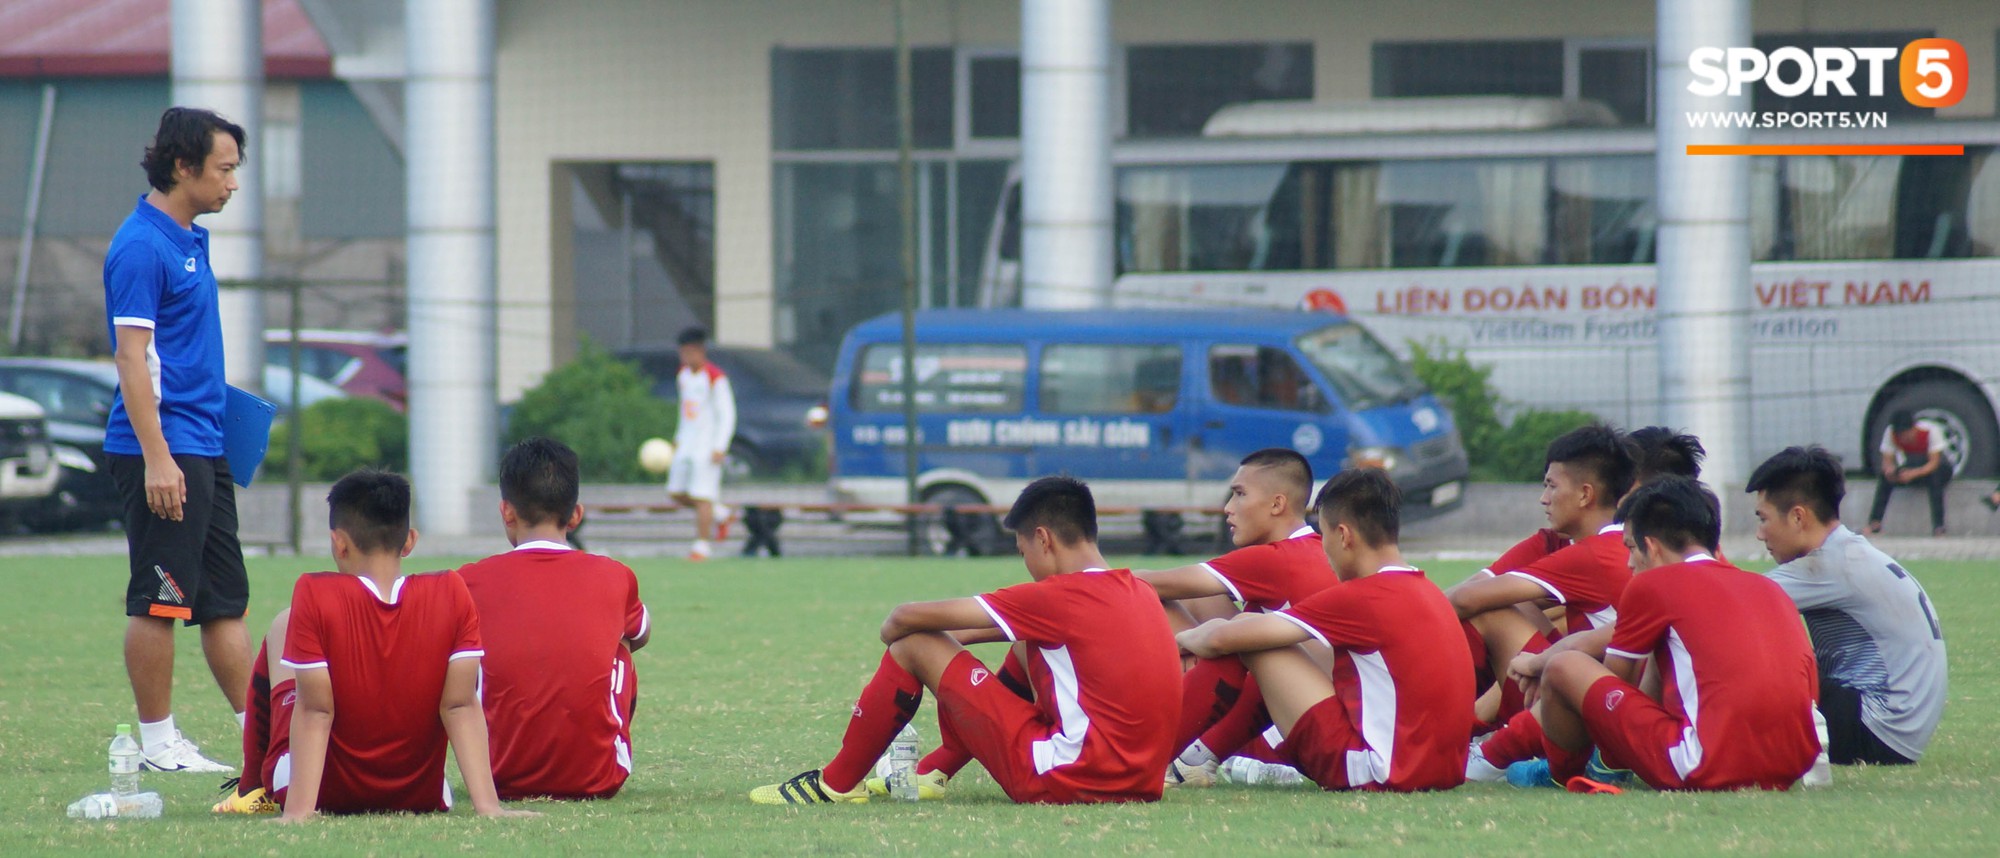 Thất bại trước đàn em của Trọng Đại, U16 Việt Nam vẫn được khen ngợi - Ảnh 8.